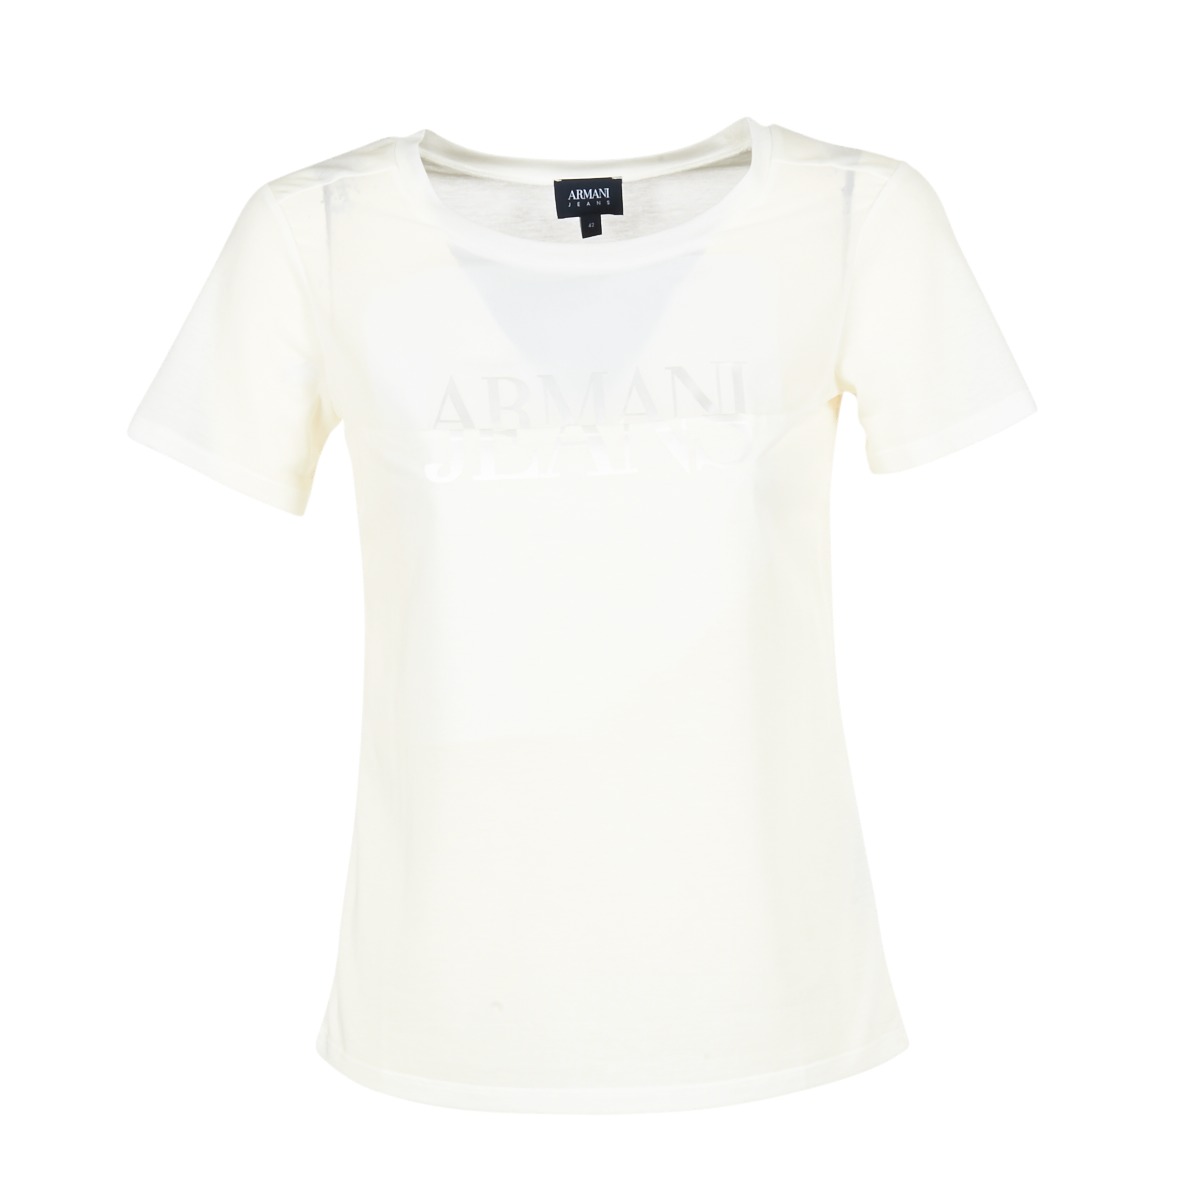 vaatteet Naiset Lyhythihainen t-paita Armani jeans KAJOLA Valkoinen